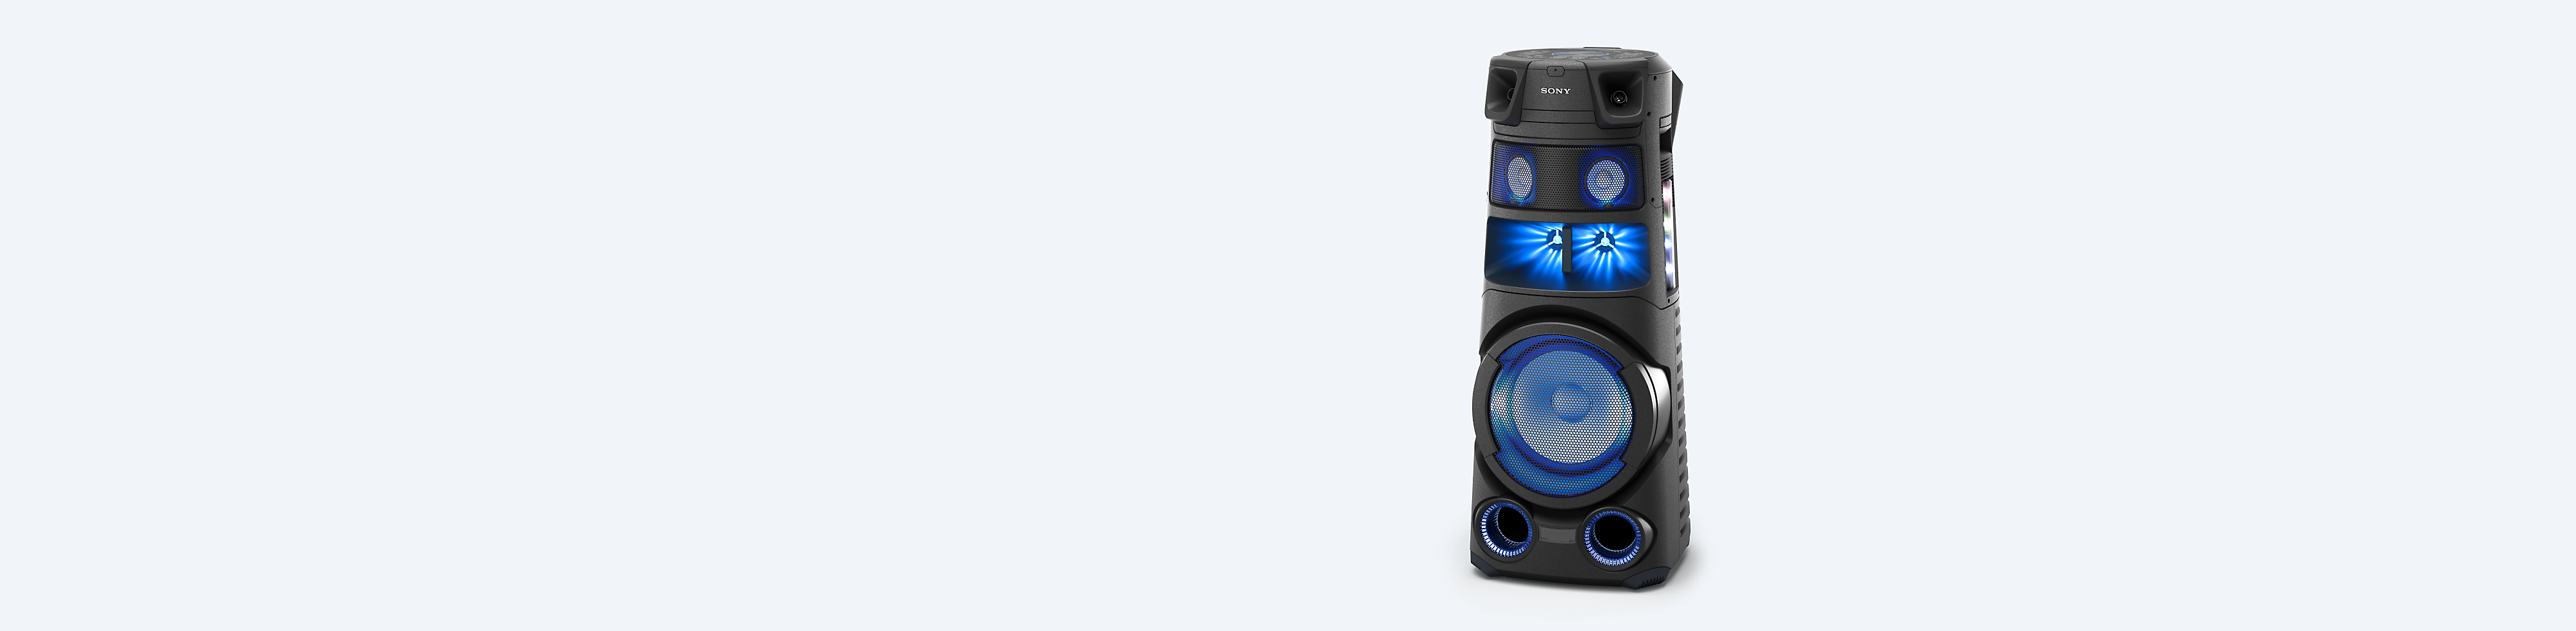 Sony nagy teljesítményű hangrendszer kék háttér előtt